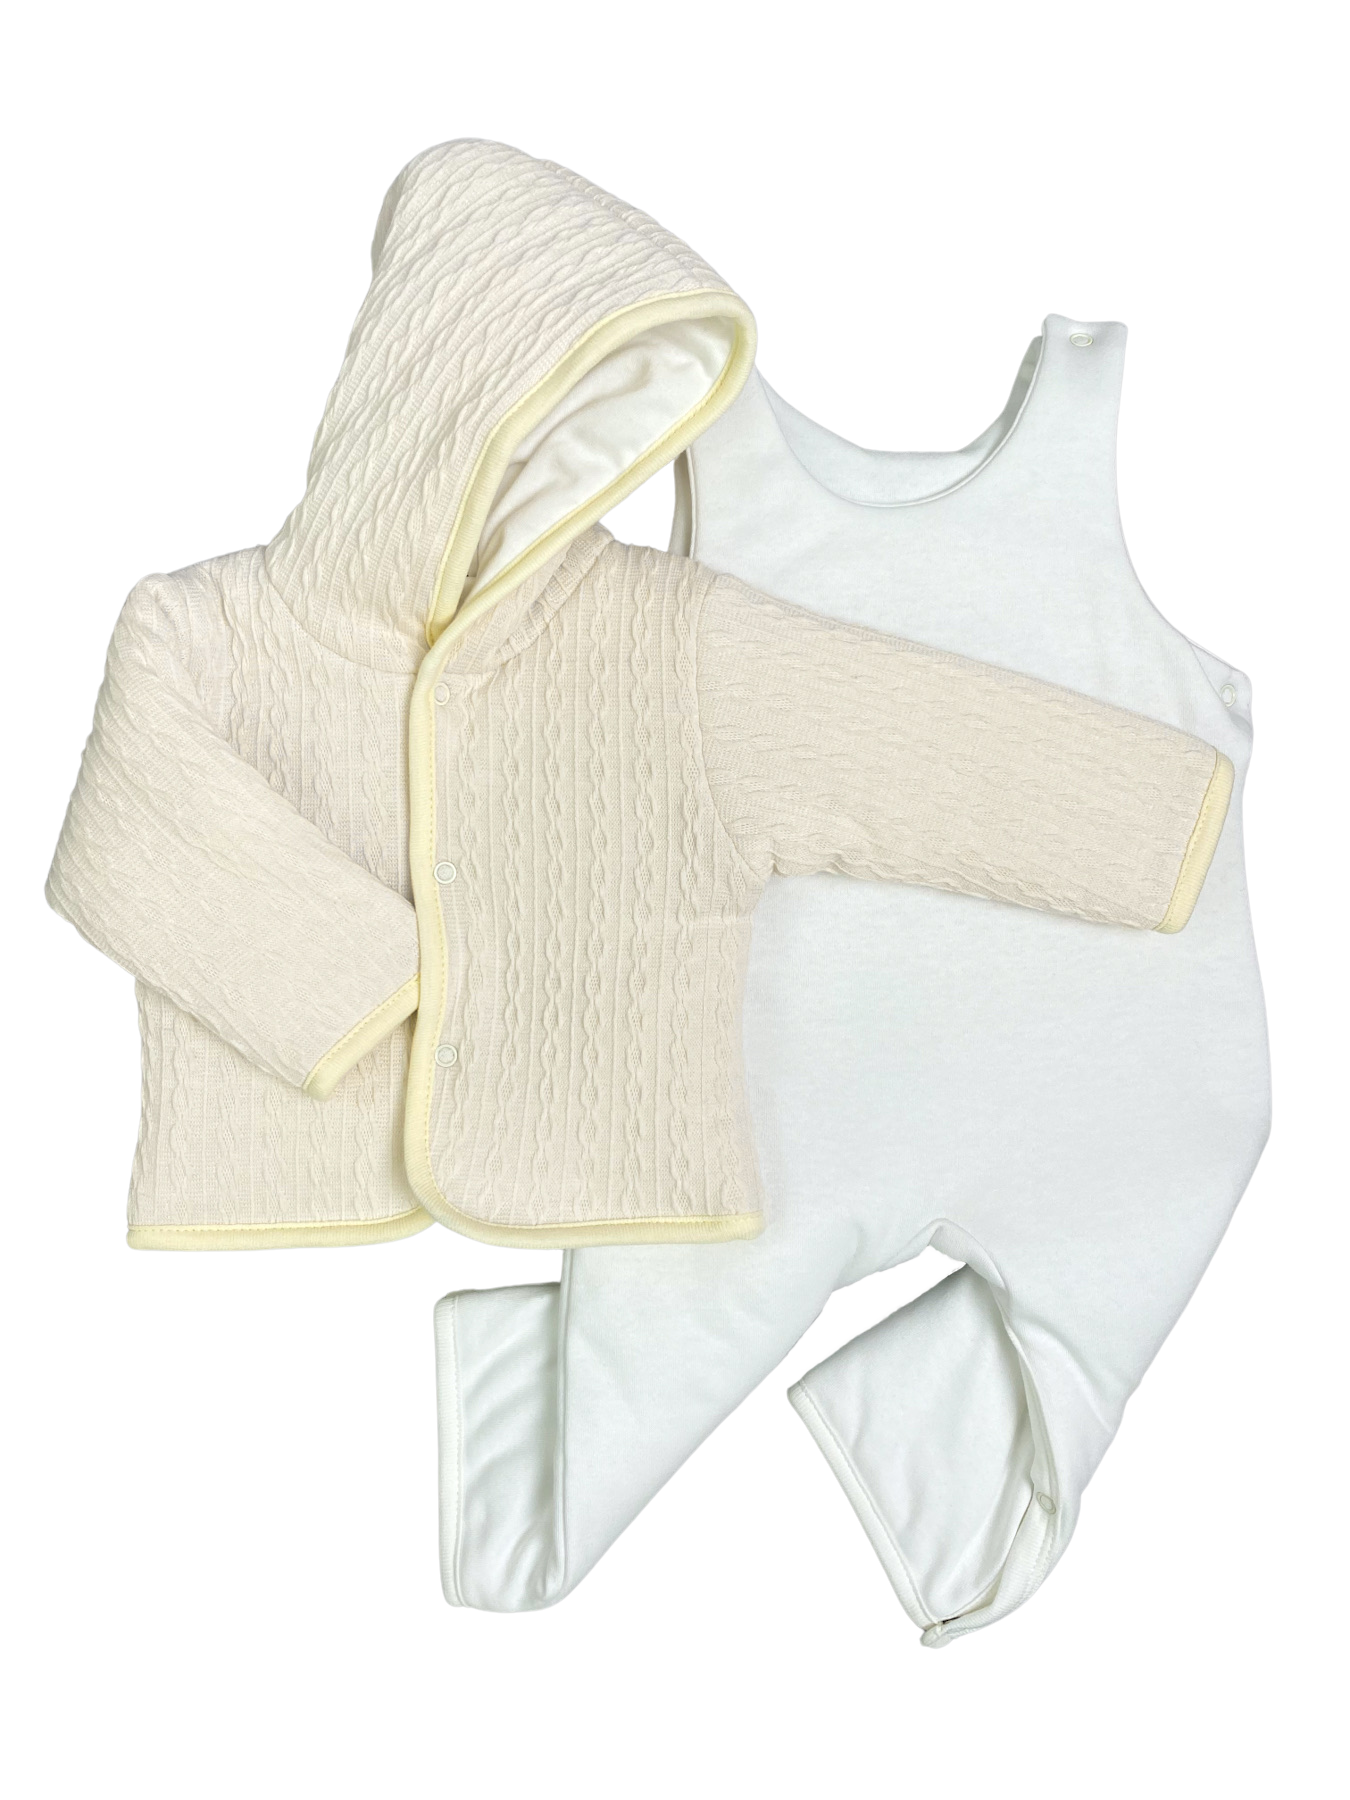 Комплект верхней одежды Clariss Вязаный микс, бежевый; белый, 74